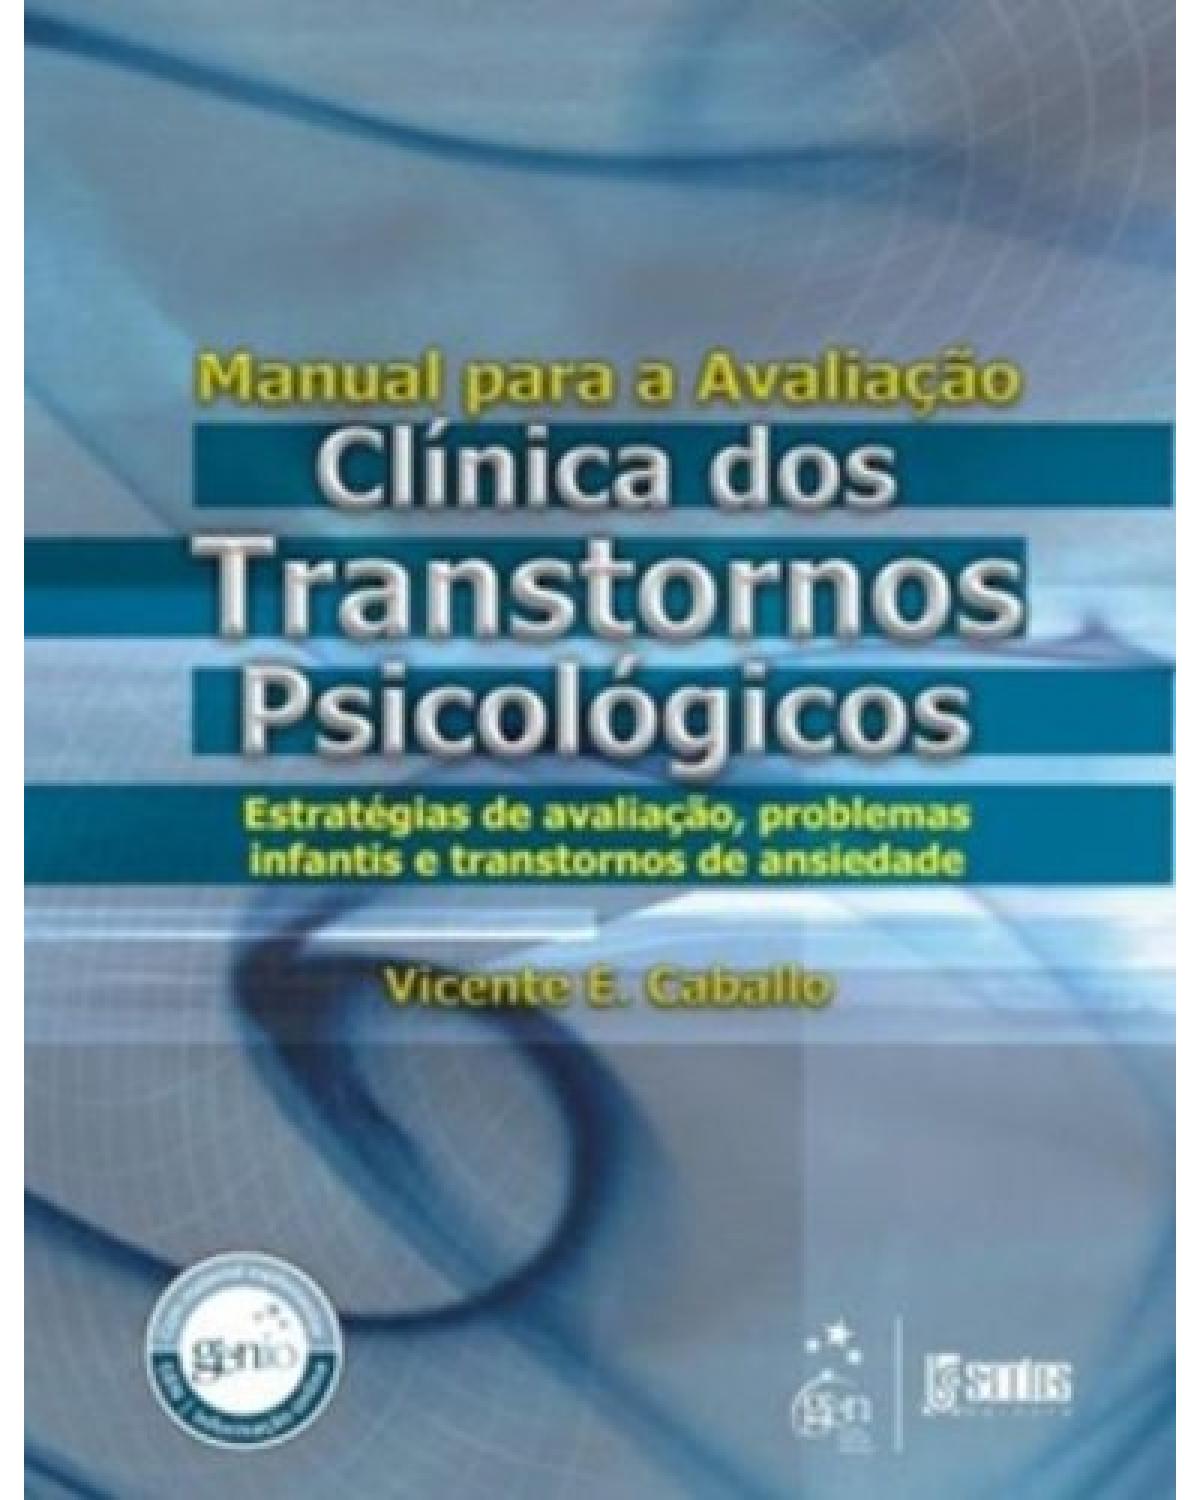 Manual para a avaliação clínica dos transtornos psicológicos - Estratégias de avaliação, problemas infantis e transtornos de ansiedade - 1ª Edição | 2012